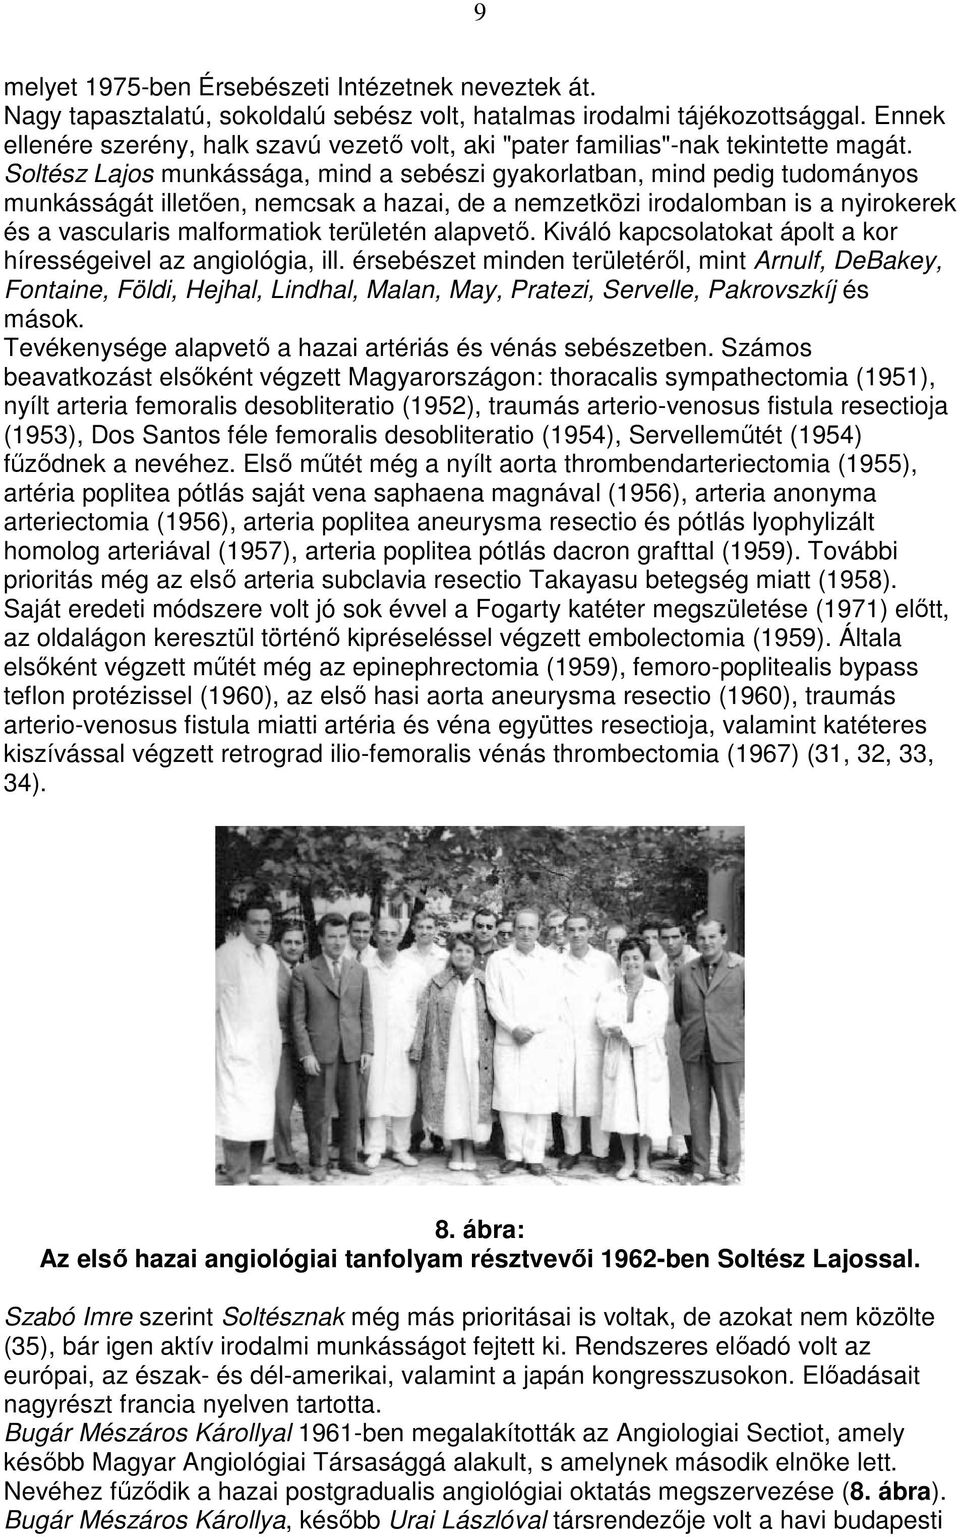 Soltész Lajos munkássága, mind a sebészi gyakorlatban, mind pedig tudományos munkásságát illetıen, nemcsak a hazai, de a nemzetközi irodalomban is a nyirokerek és a vascularis malformatiok területén